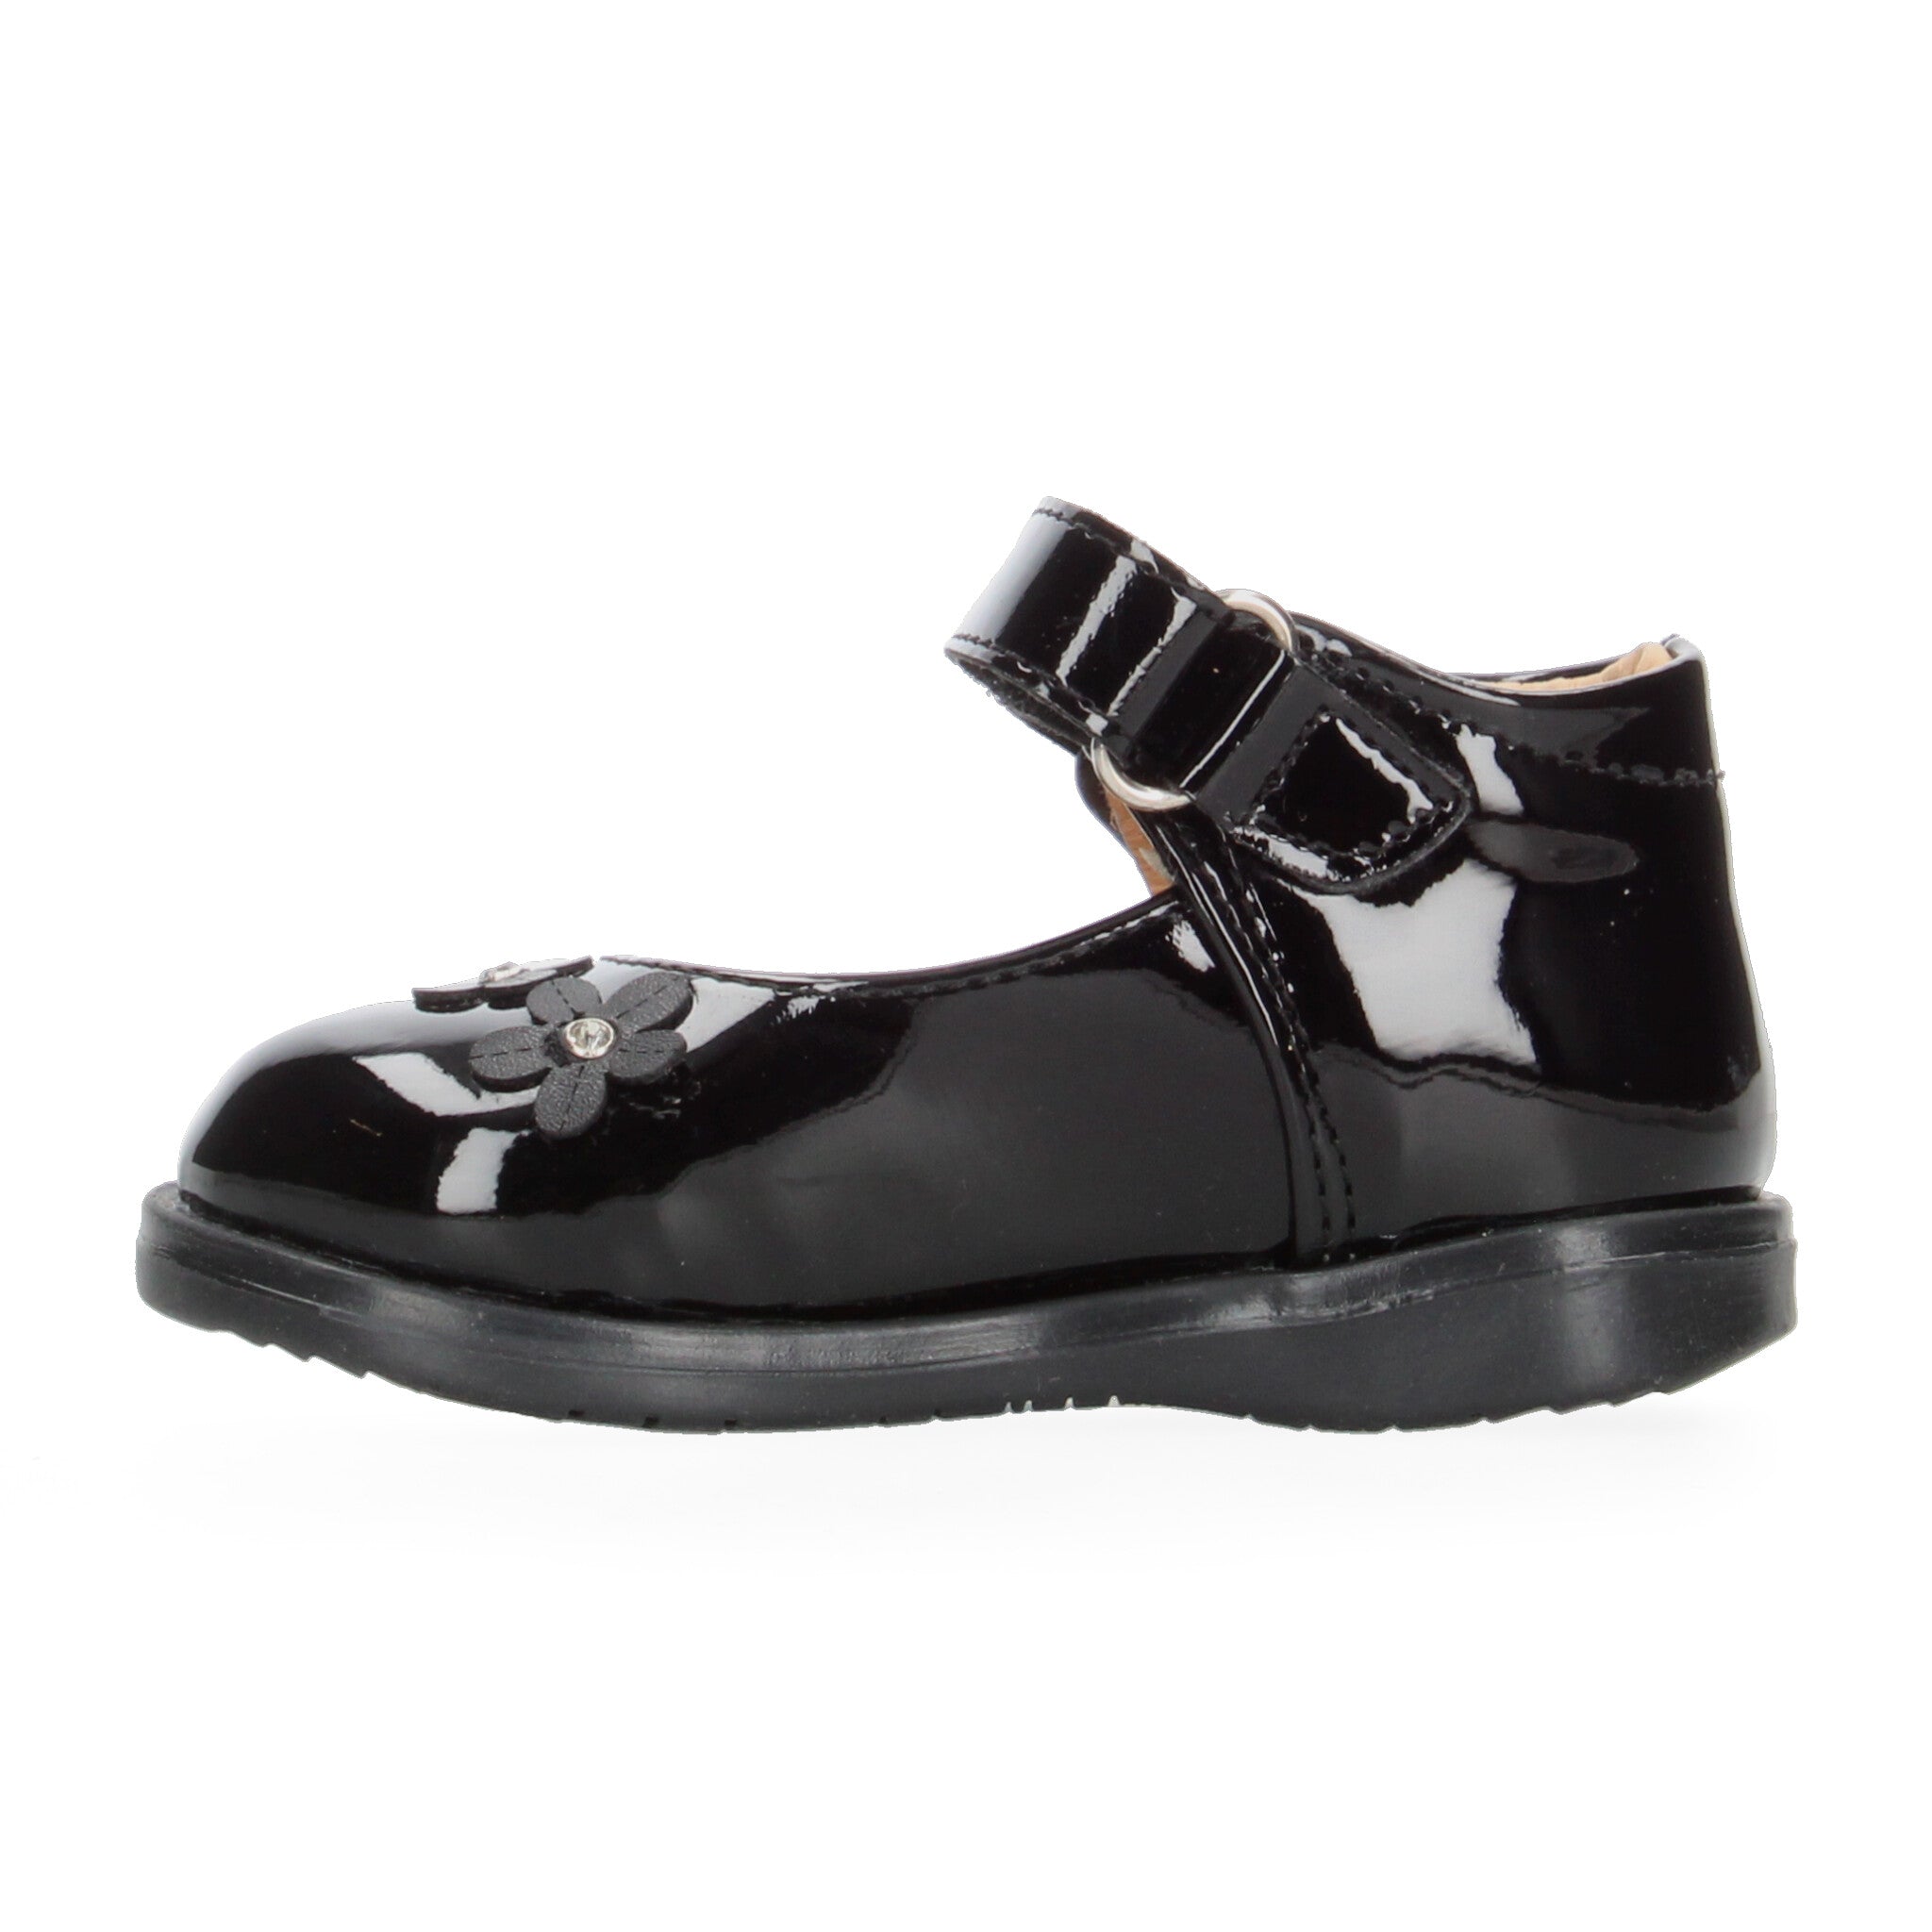 Zapato Casual Vavito Negro para Niña [VVV1095] VAVITO 